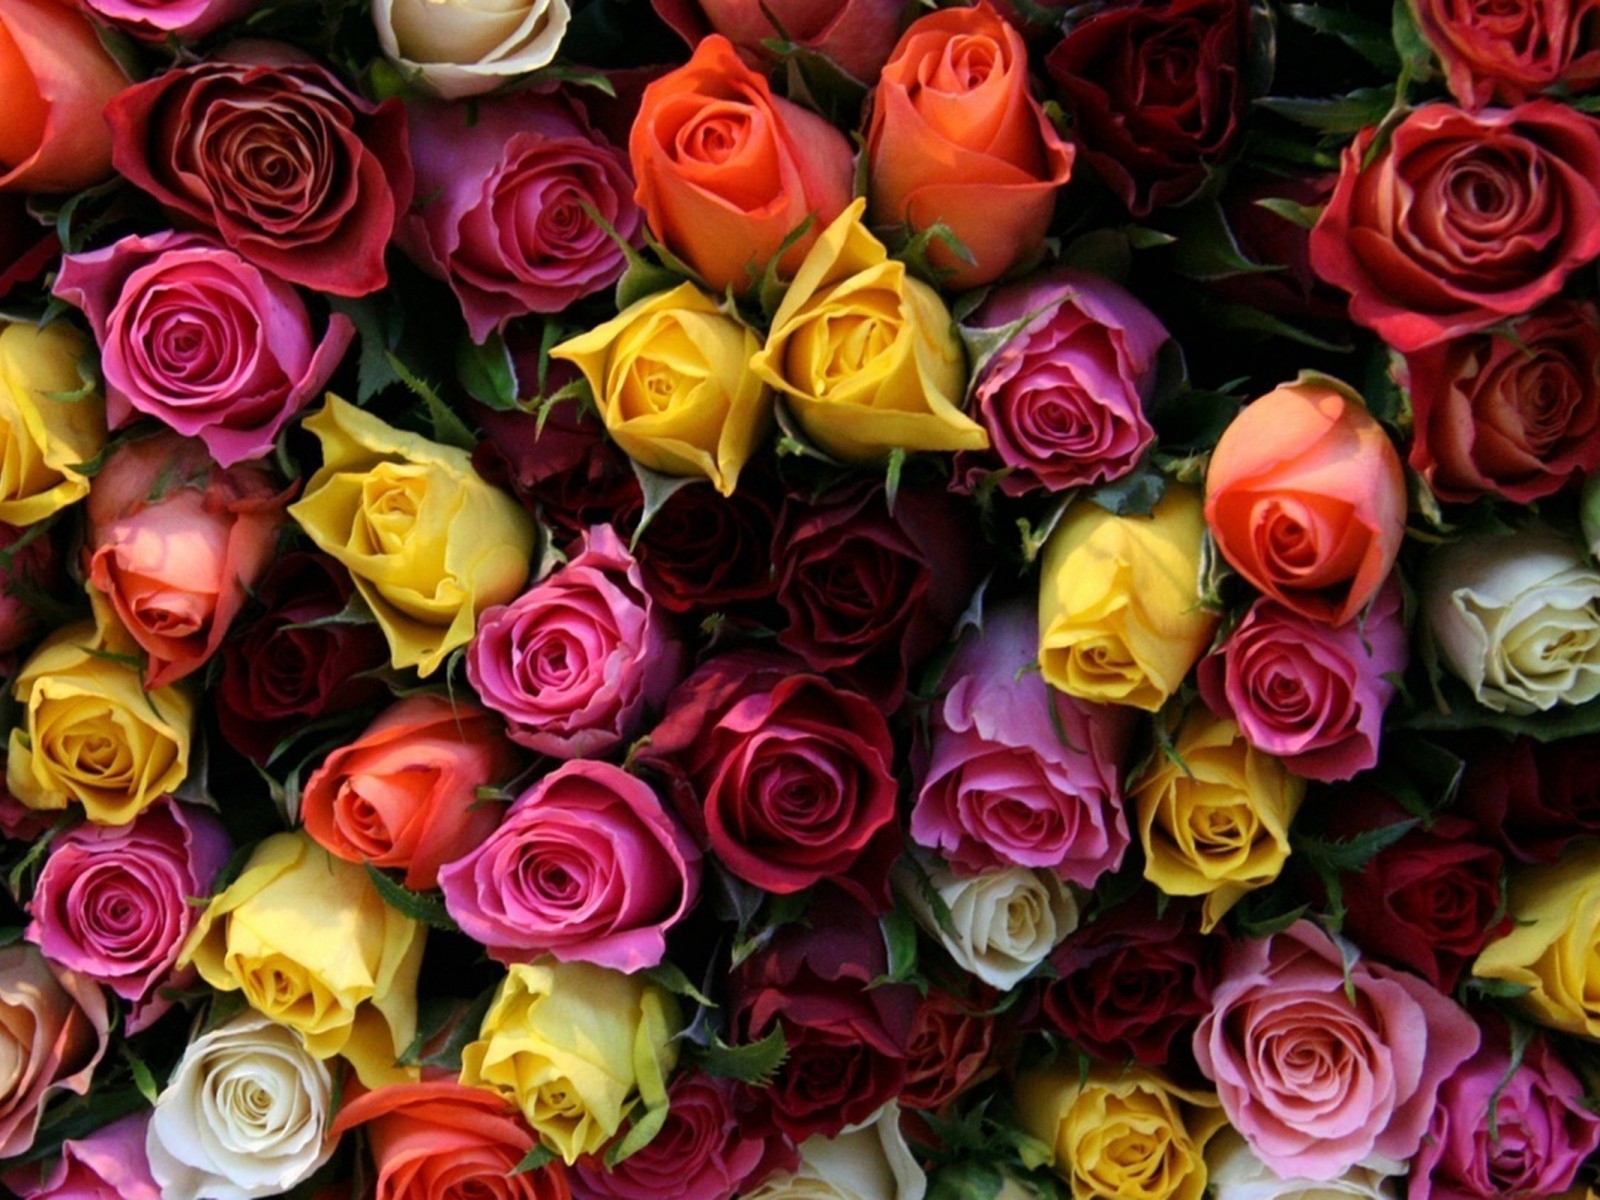 rose colour wallpaper,flower,rose,flowering plant,garden roses,rose family